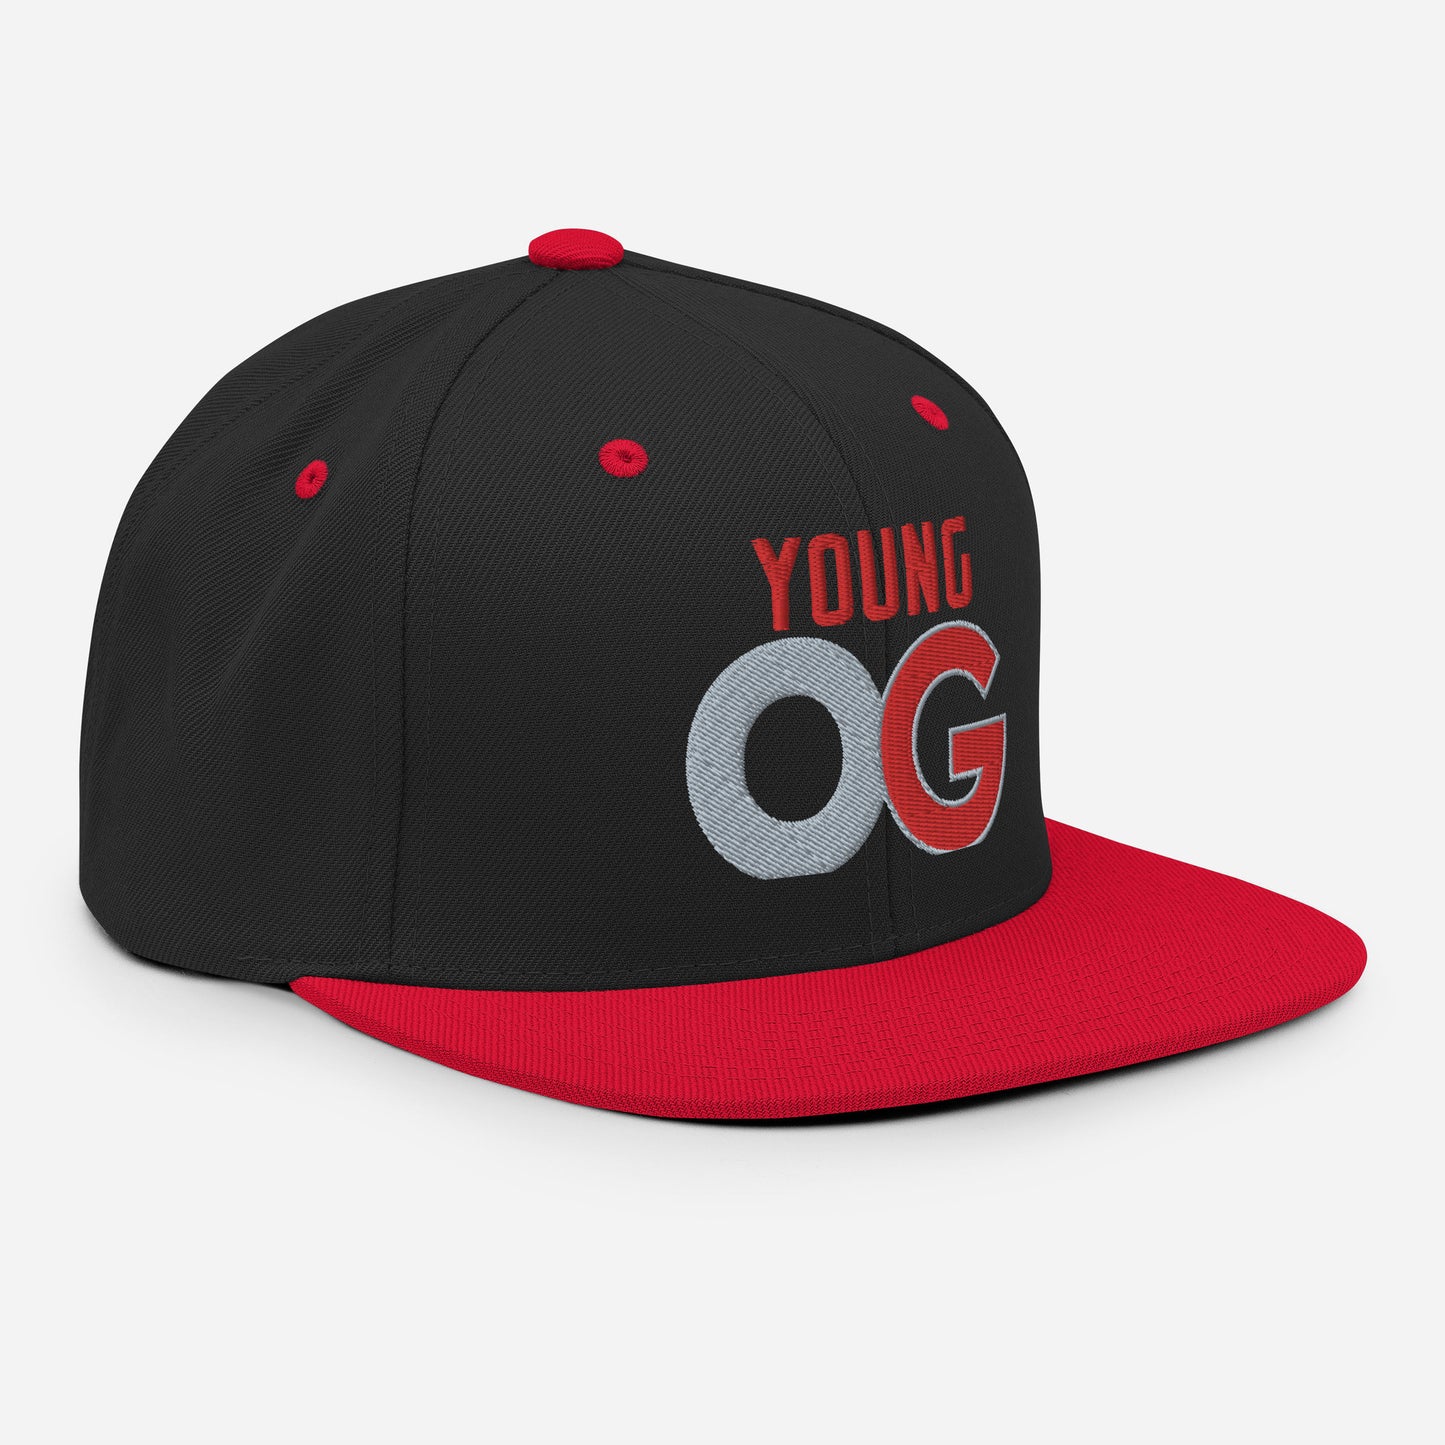 Young OG Snapback Hat